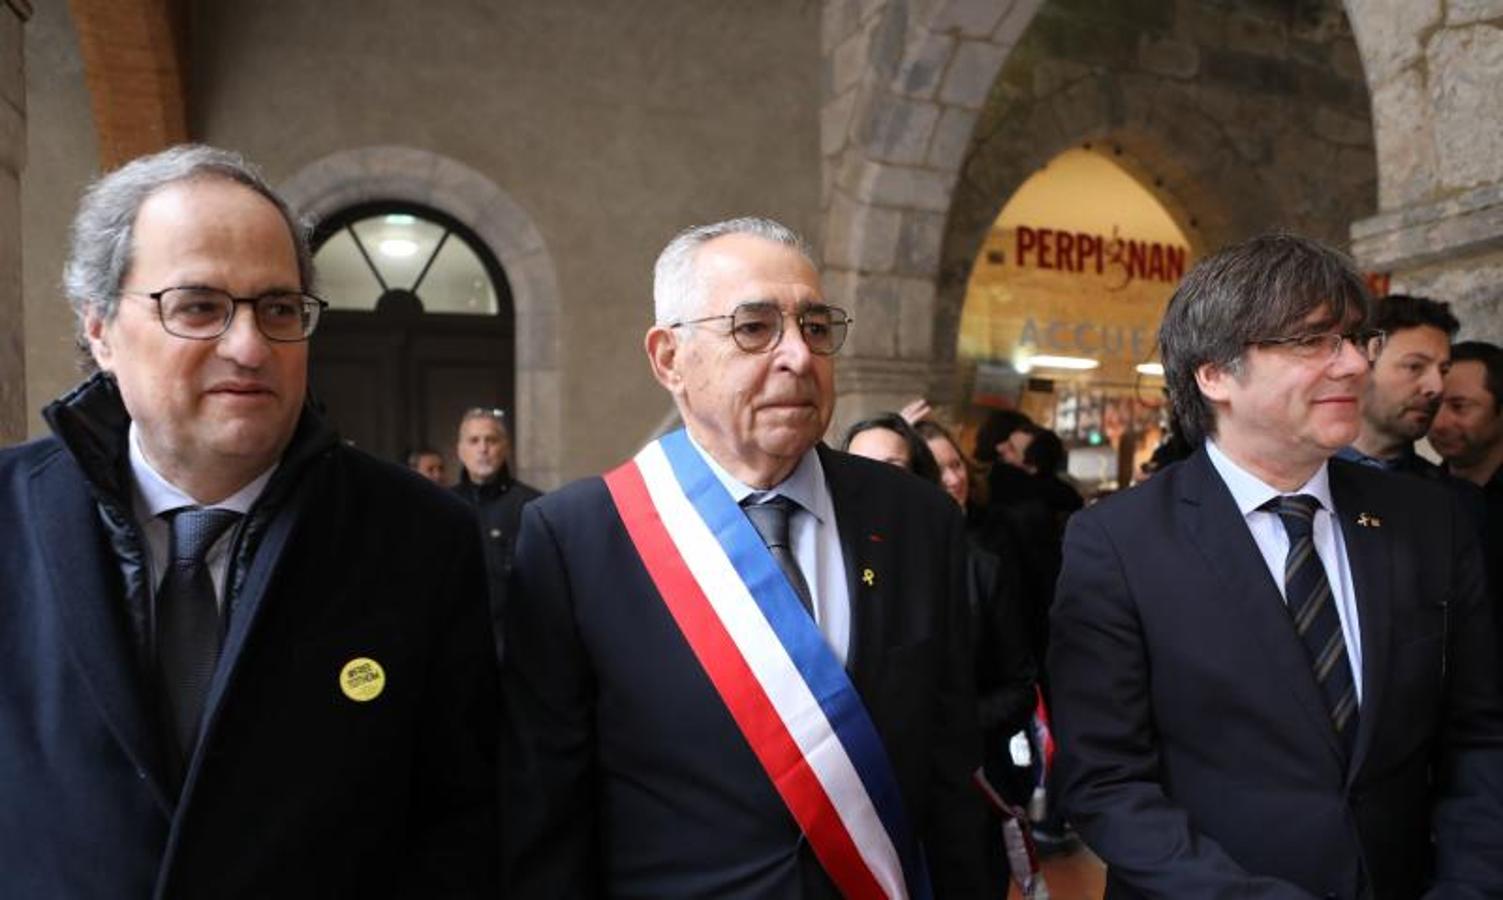 El presidente de de la Generalitat Cataluña, Quim Torra, el alcalde de Perpiñán, Jean-Marc Pujol, y el miembro del Parlamento Europeo y el expresidente catalán, Carles Puigdemont.